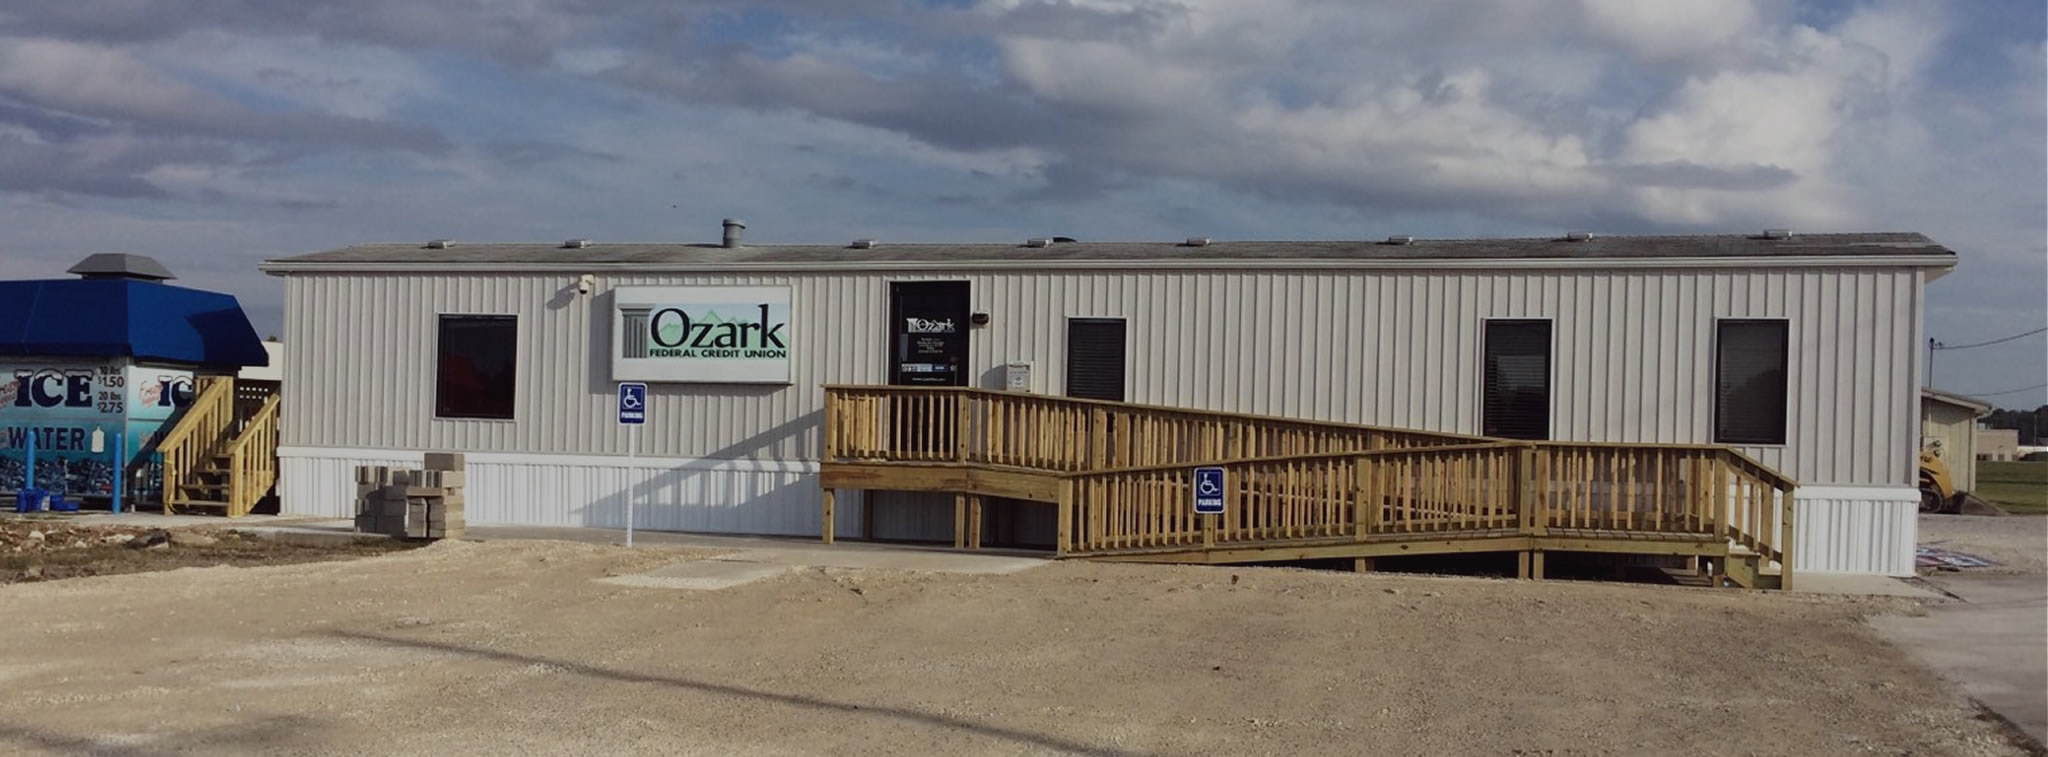 Ozark Federal Credit Union Poplar Bluff MO